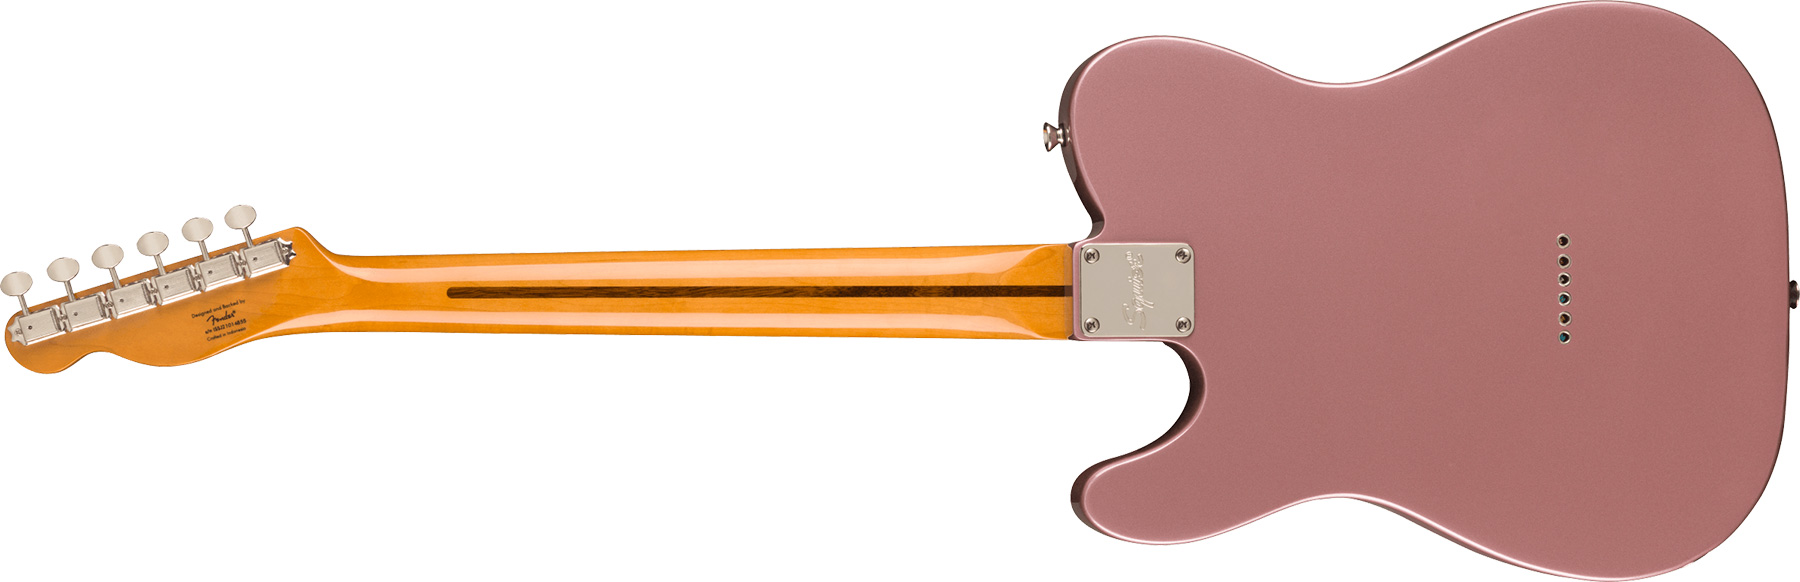 Squier Tele '50s Parchment Pickguard Classic Vibe Fsr 2s Ht Mn - Burgundy Mist - Tel shape electric guitar - Variation 1